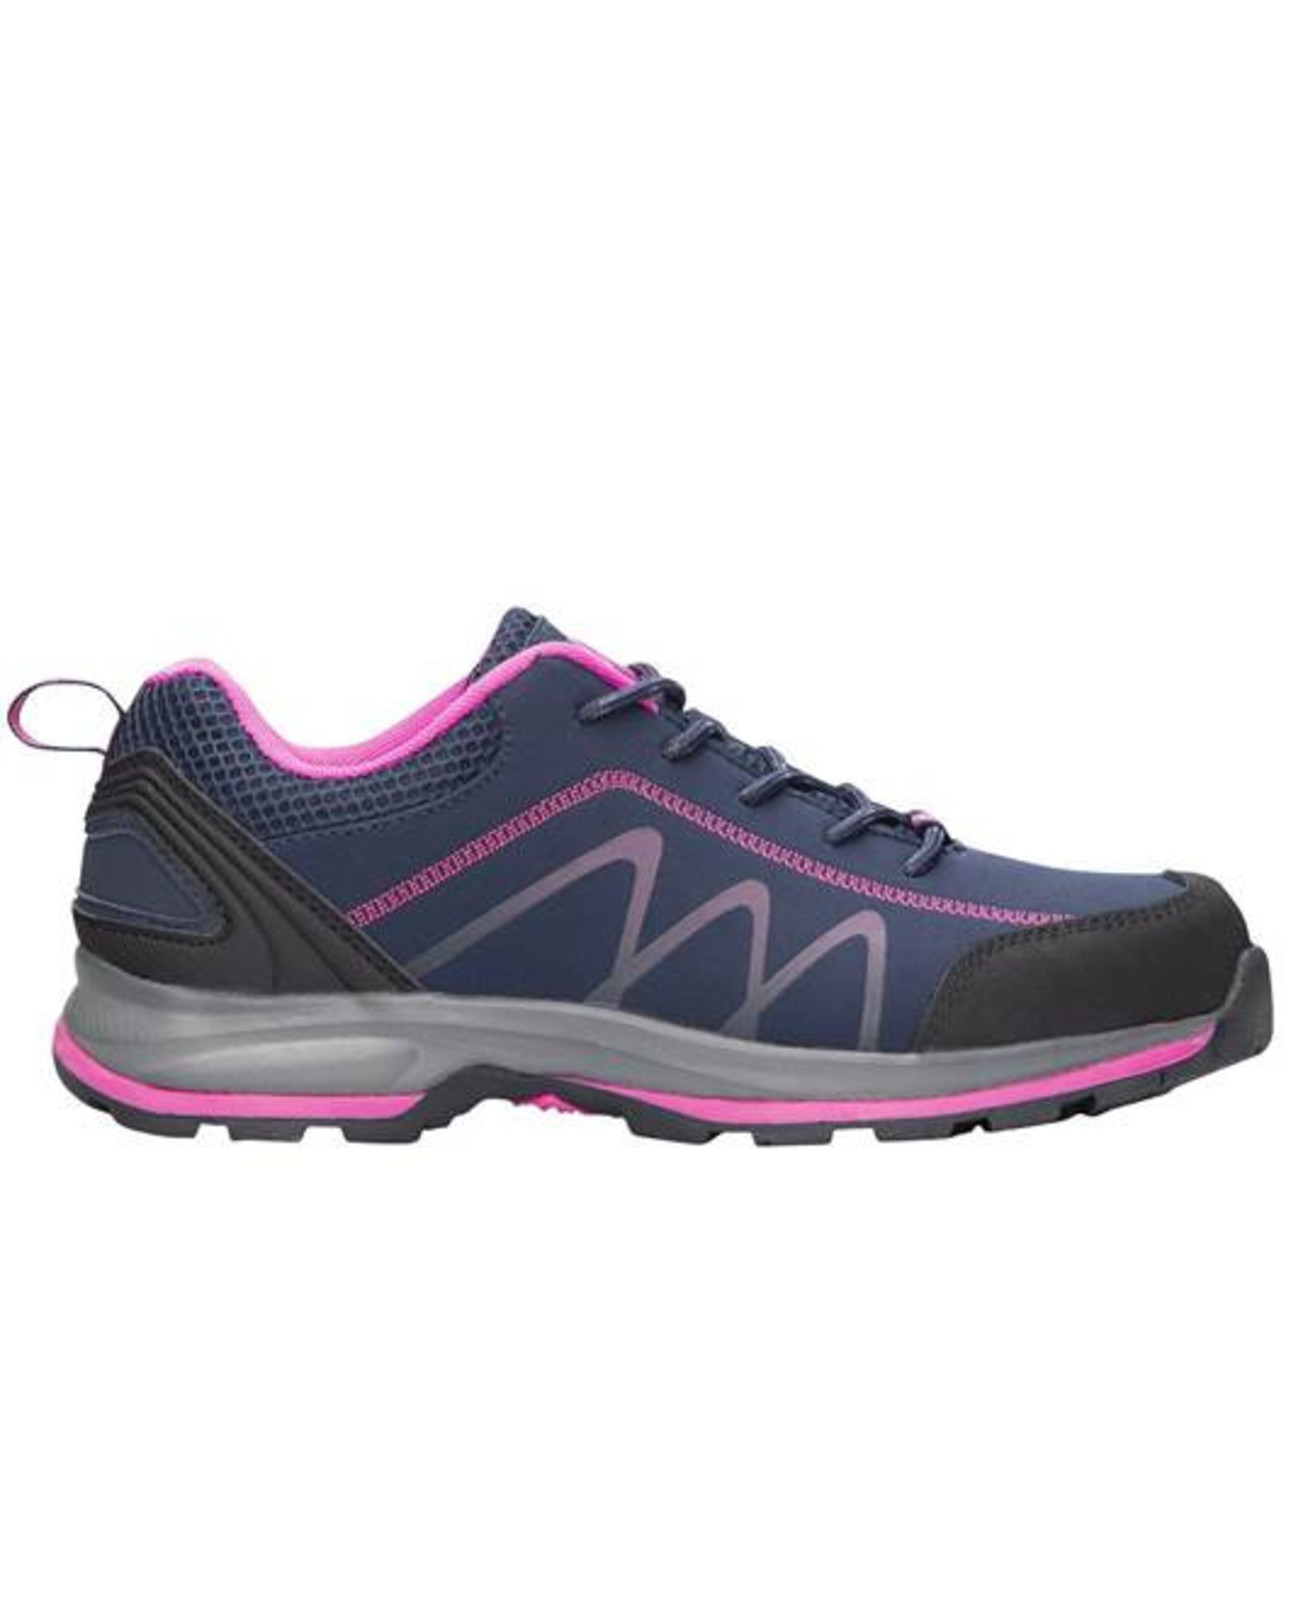 Dámska outdoor softshellová obuv Ardon Bloom - veľkosť: 35, farba: navy lila